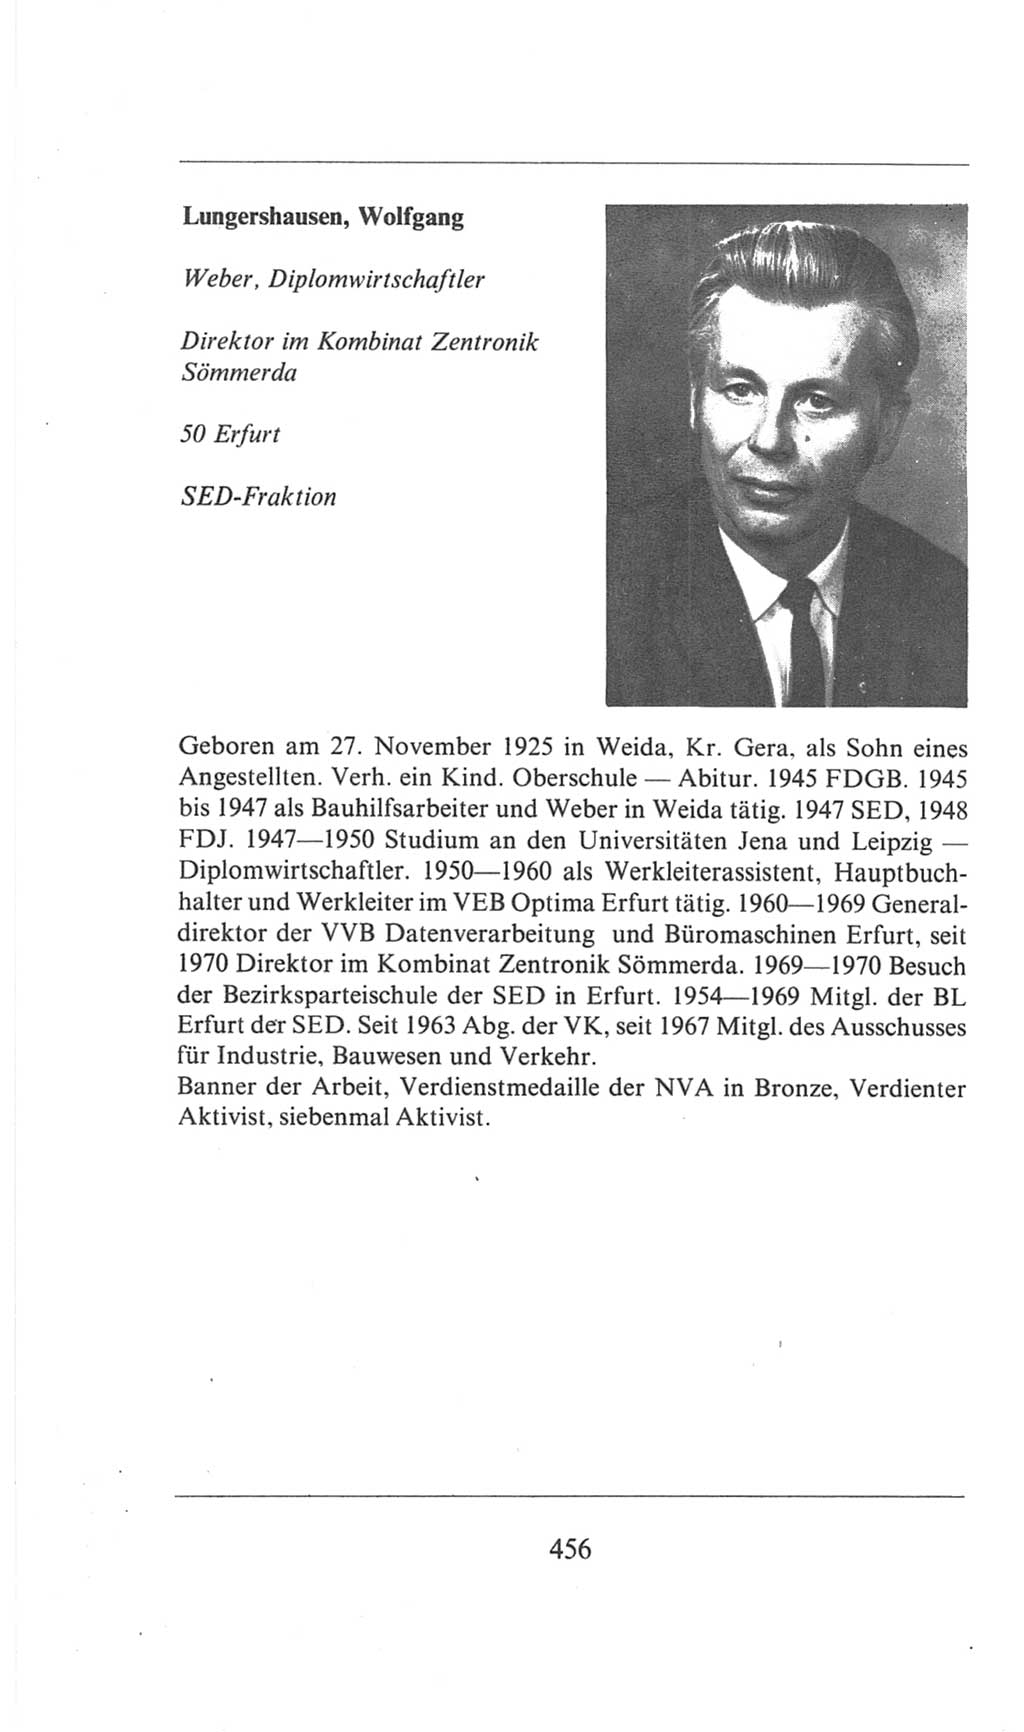 Volkskammer (VK) der Deutschen Demokratischen Republik (DDR), 6. Wahlperiode 1971-1976, Seite 456 (VK. DDR 6. WP. 1971-1976, S. 456)